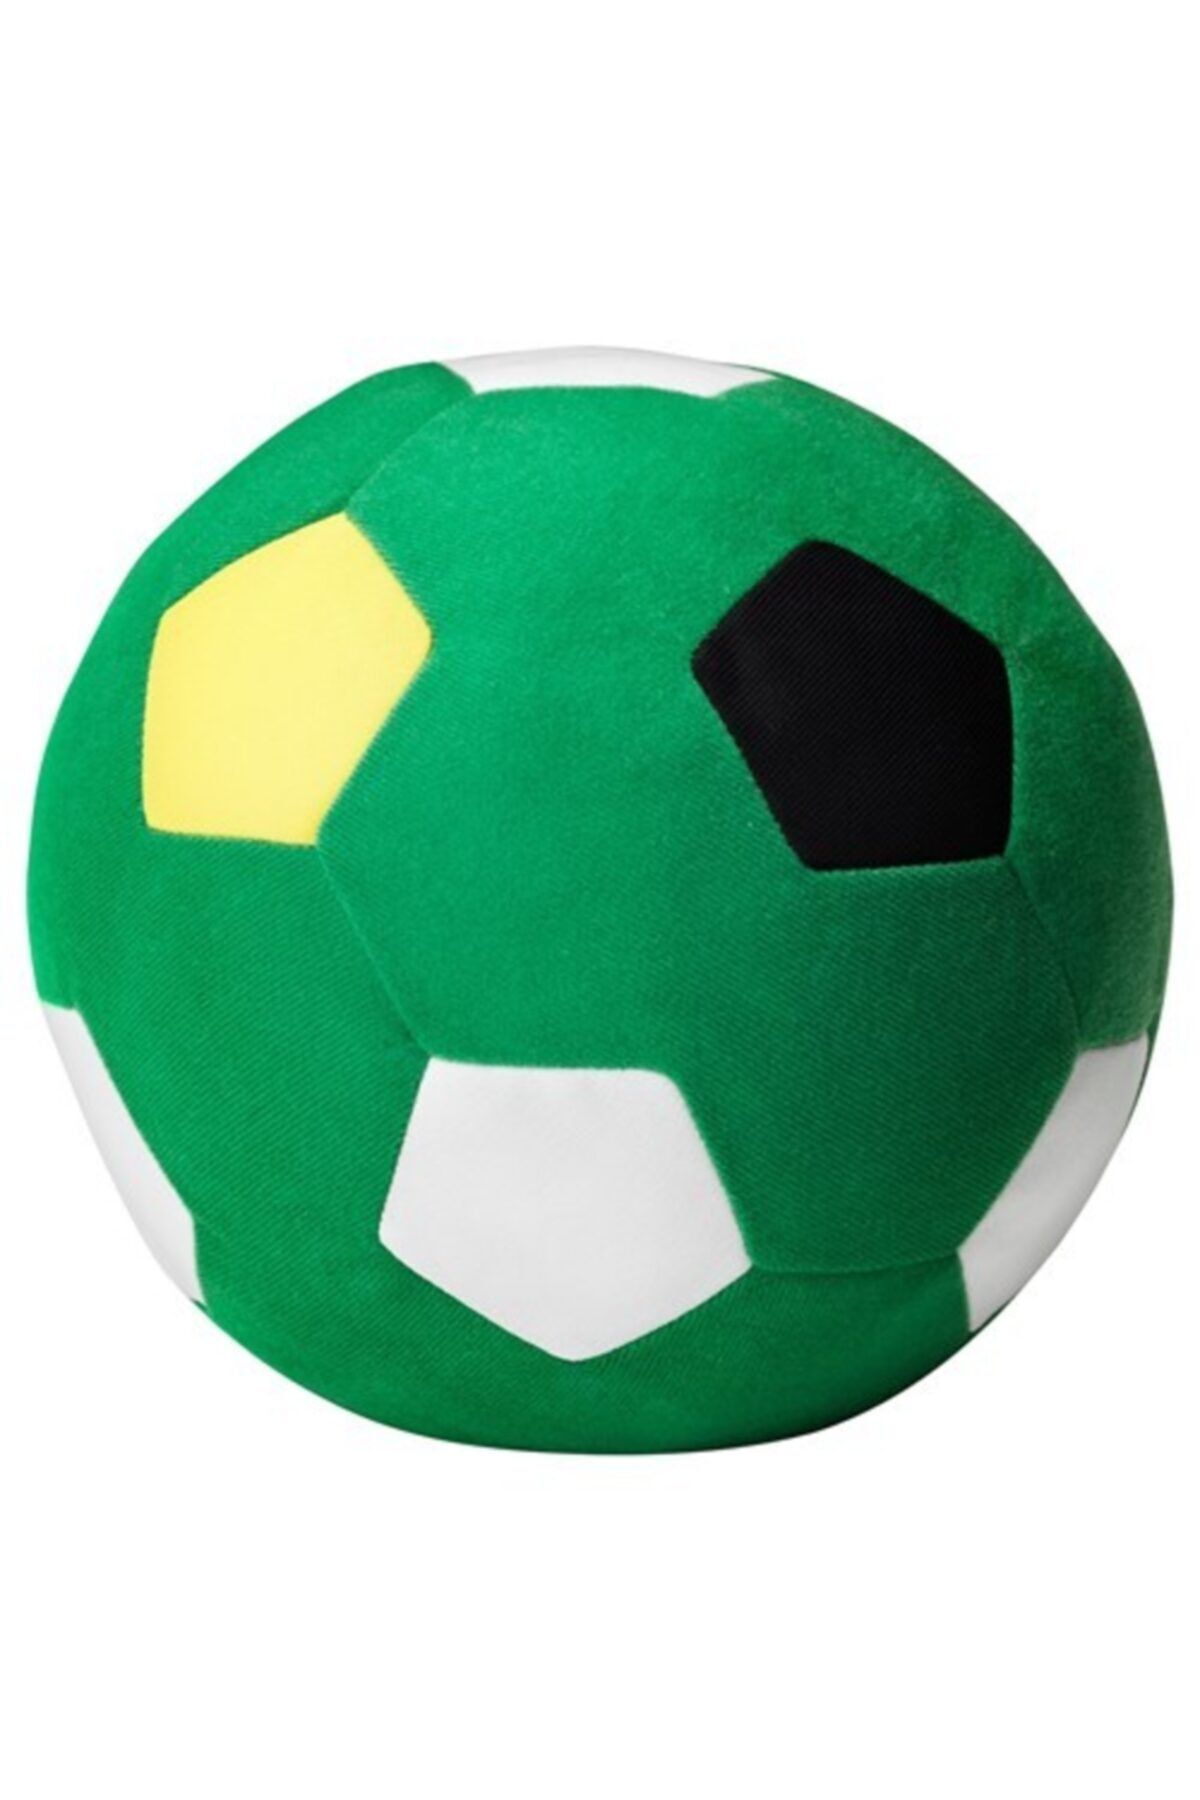 IKEA Yumuşak Top Peluş Oyuncak Meridyendukkan 20 Cm Yeşil Top Çocuk Oyuncak